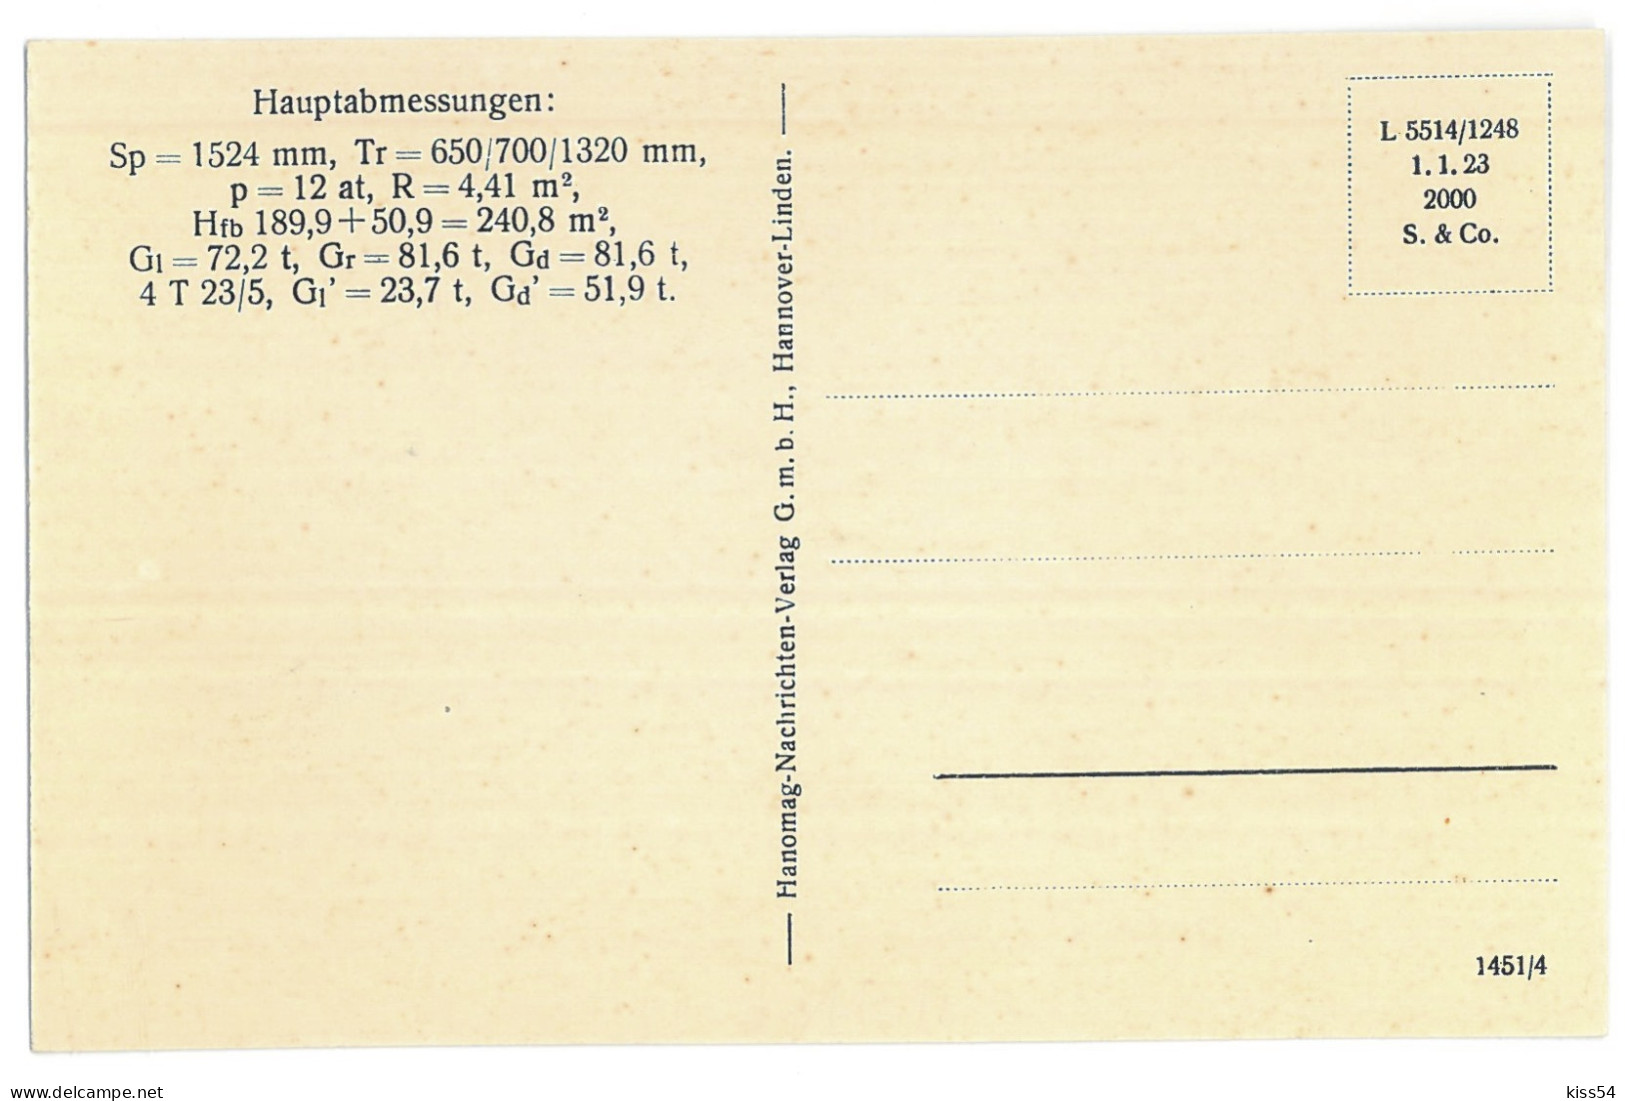 RUS 60 - 13676 LOCOMOTIVE, Russia - Old Postcard - Unused - Russia